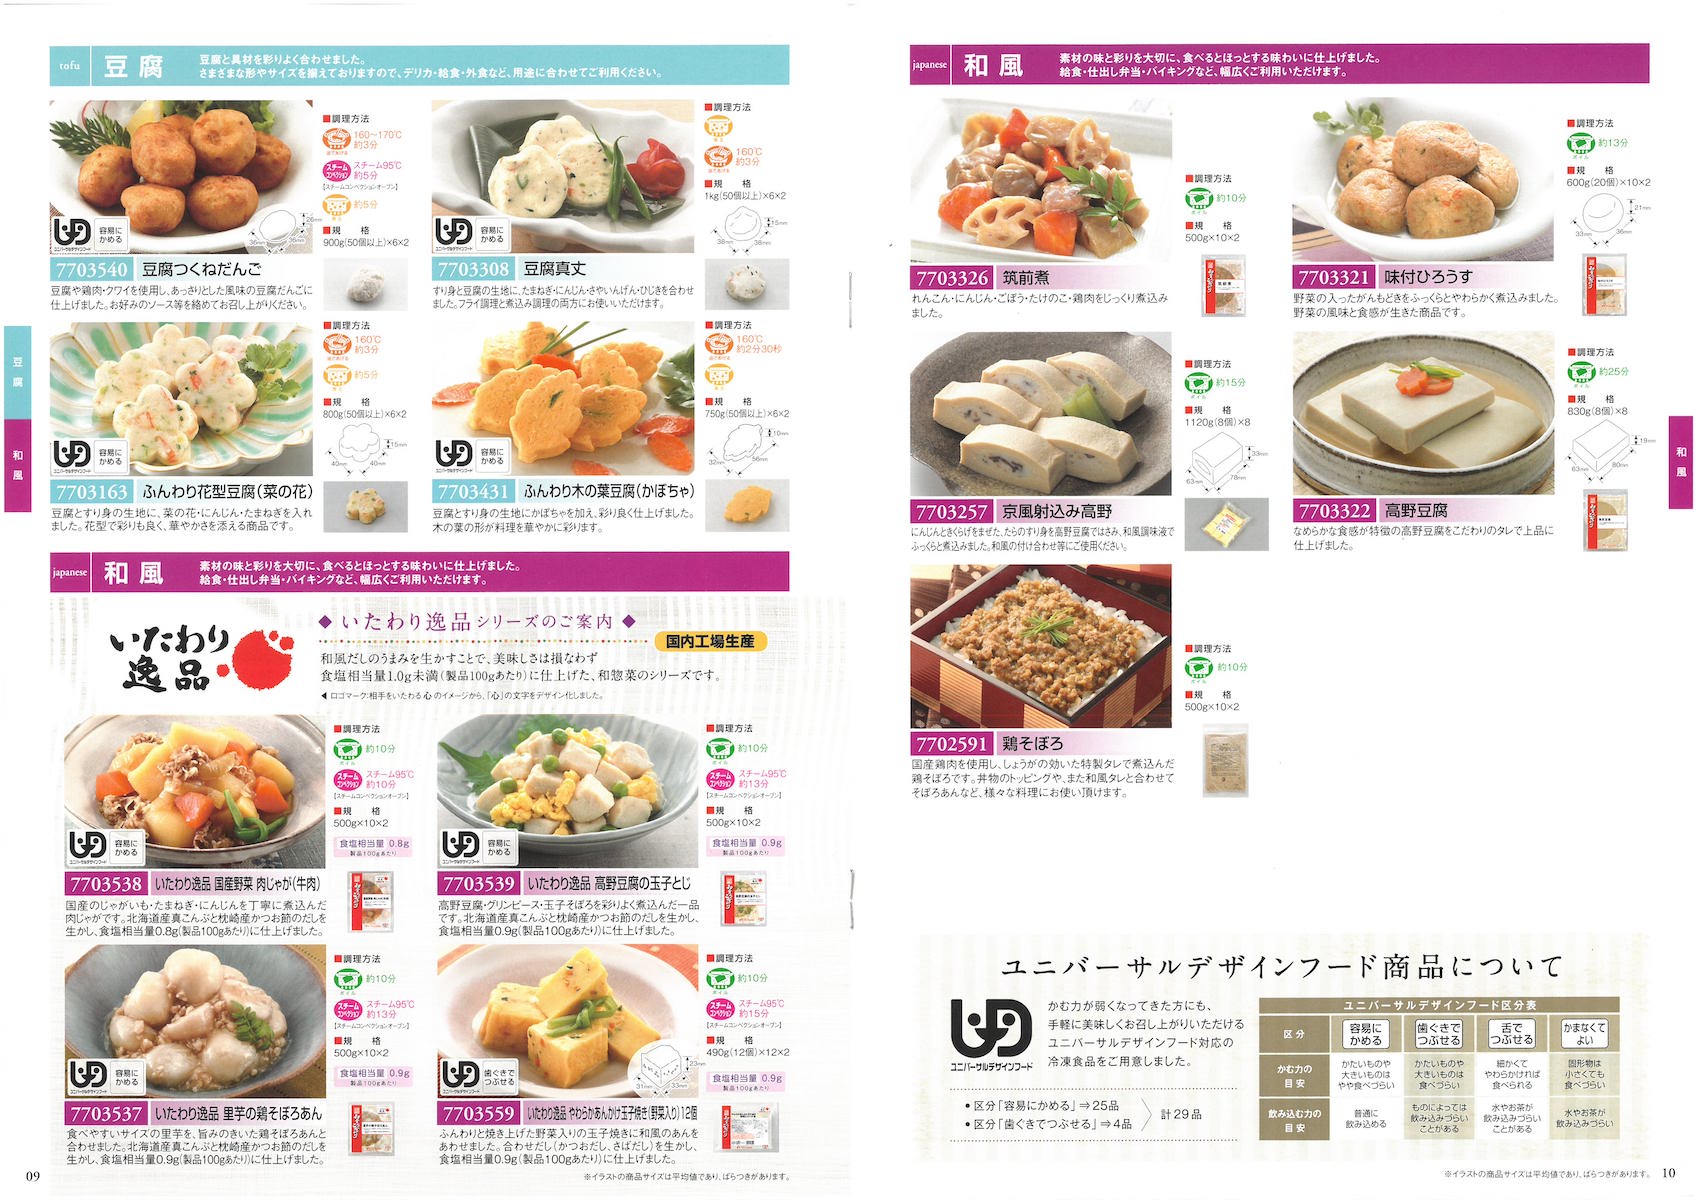 ケイエス冷凍食品 業務用総合カタログ2019 | 冷凍食品カタログ.com